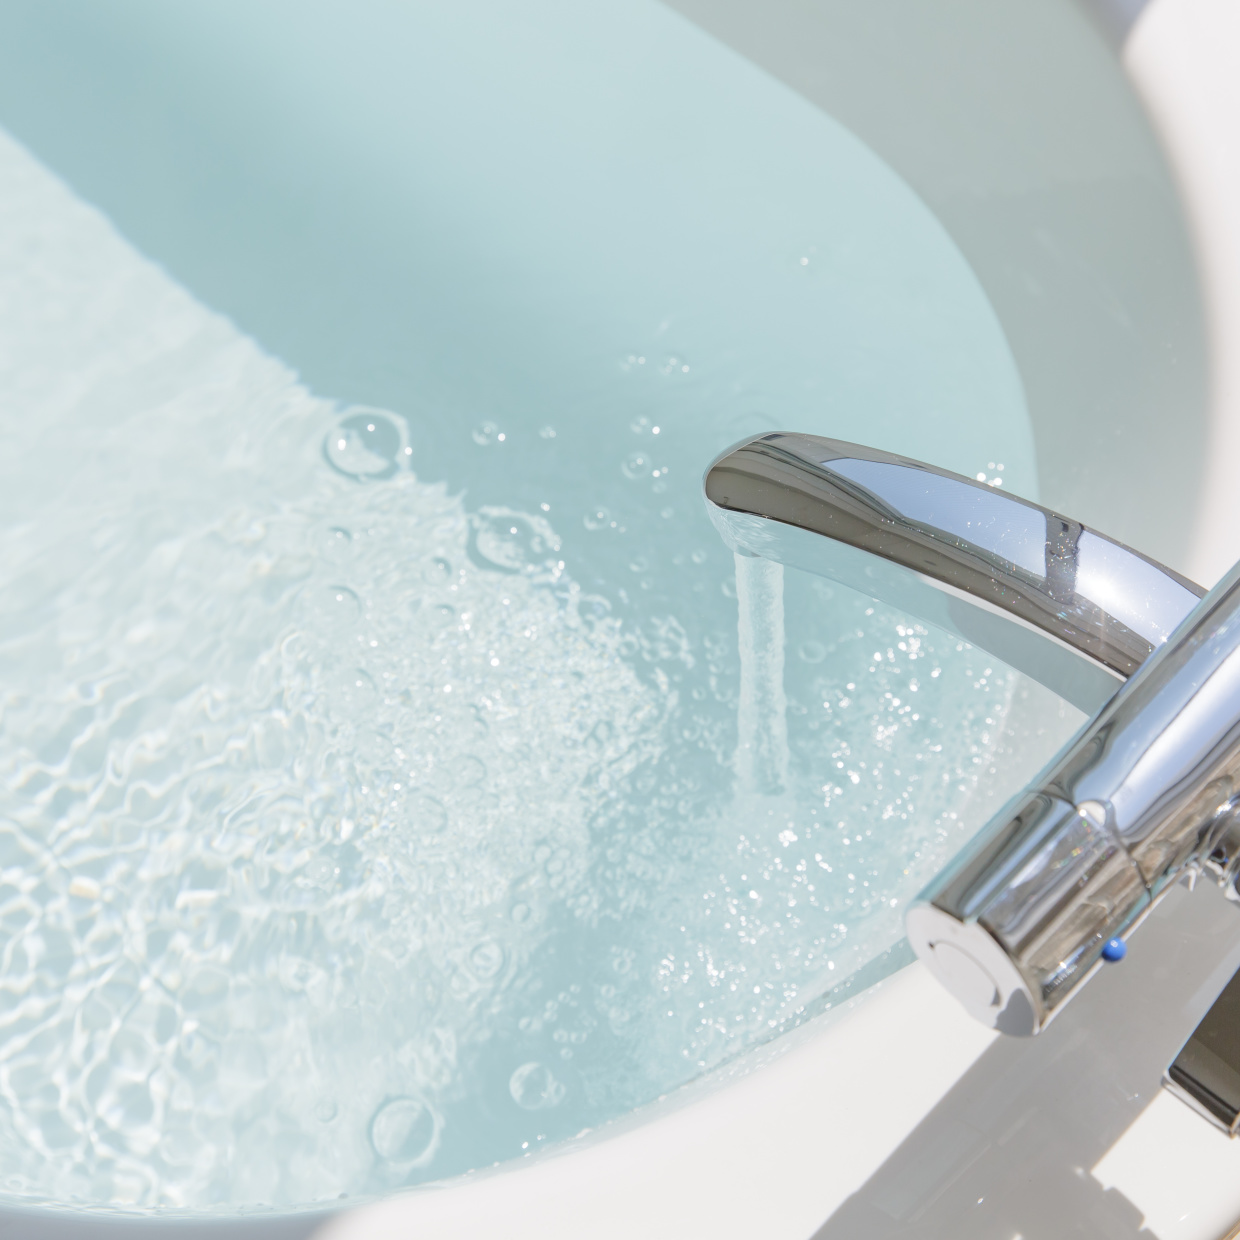  「風呂釜の汚れ」をごっそり落とす！“最もカンタン”な風呂釜掃除術 